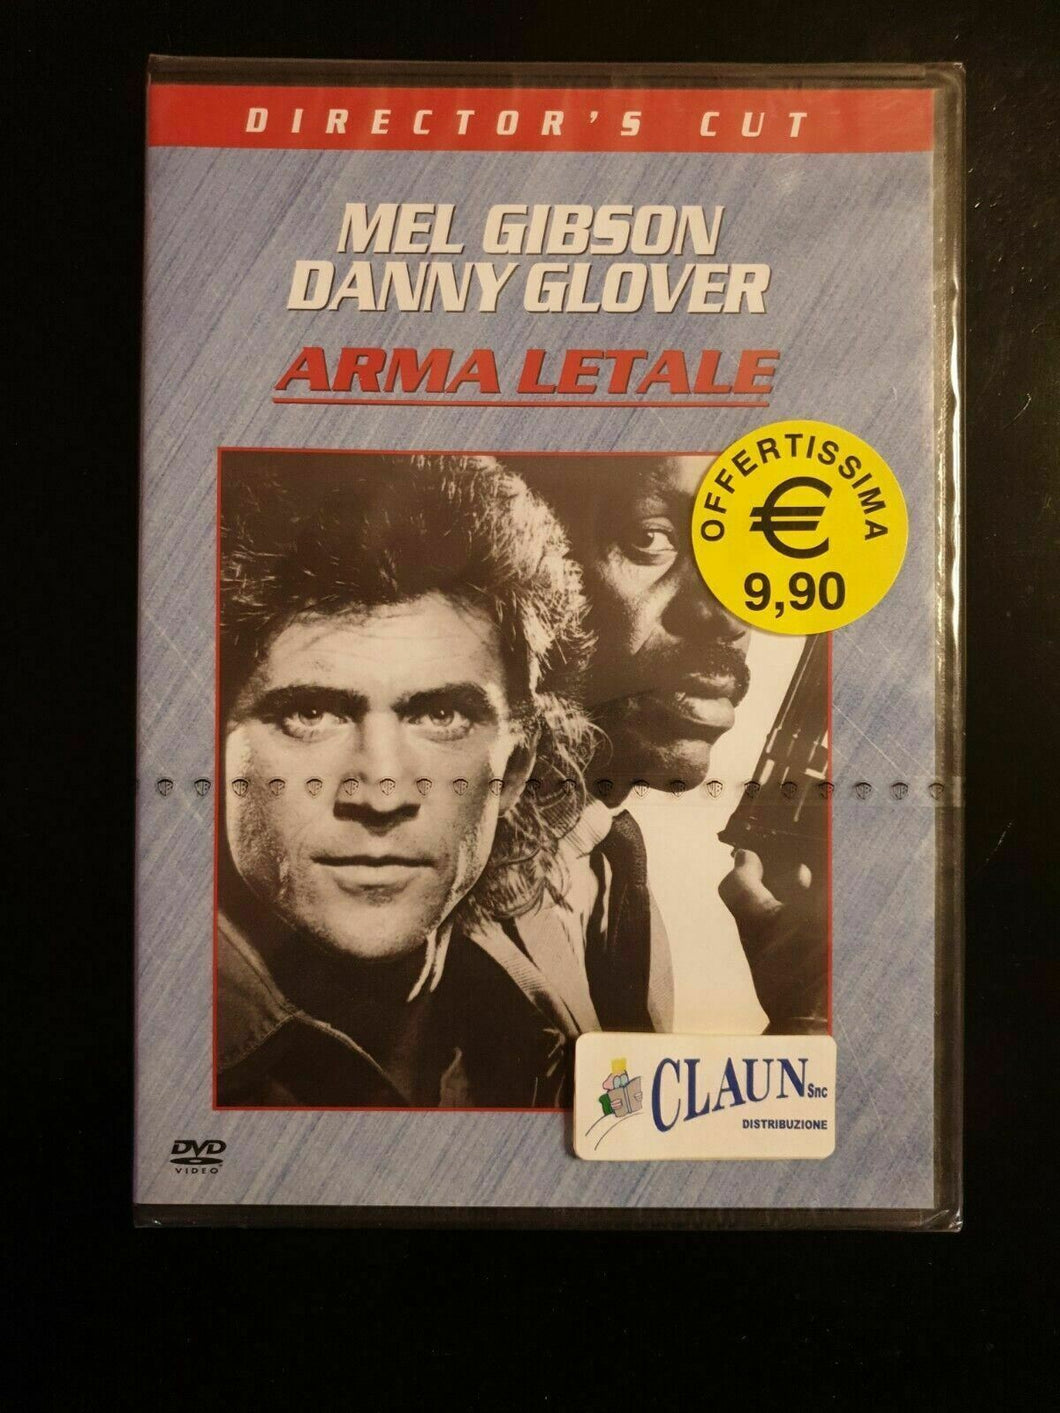 Arma letale (1987) Mel Gibson DVD Nuovo